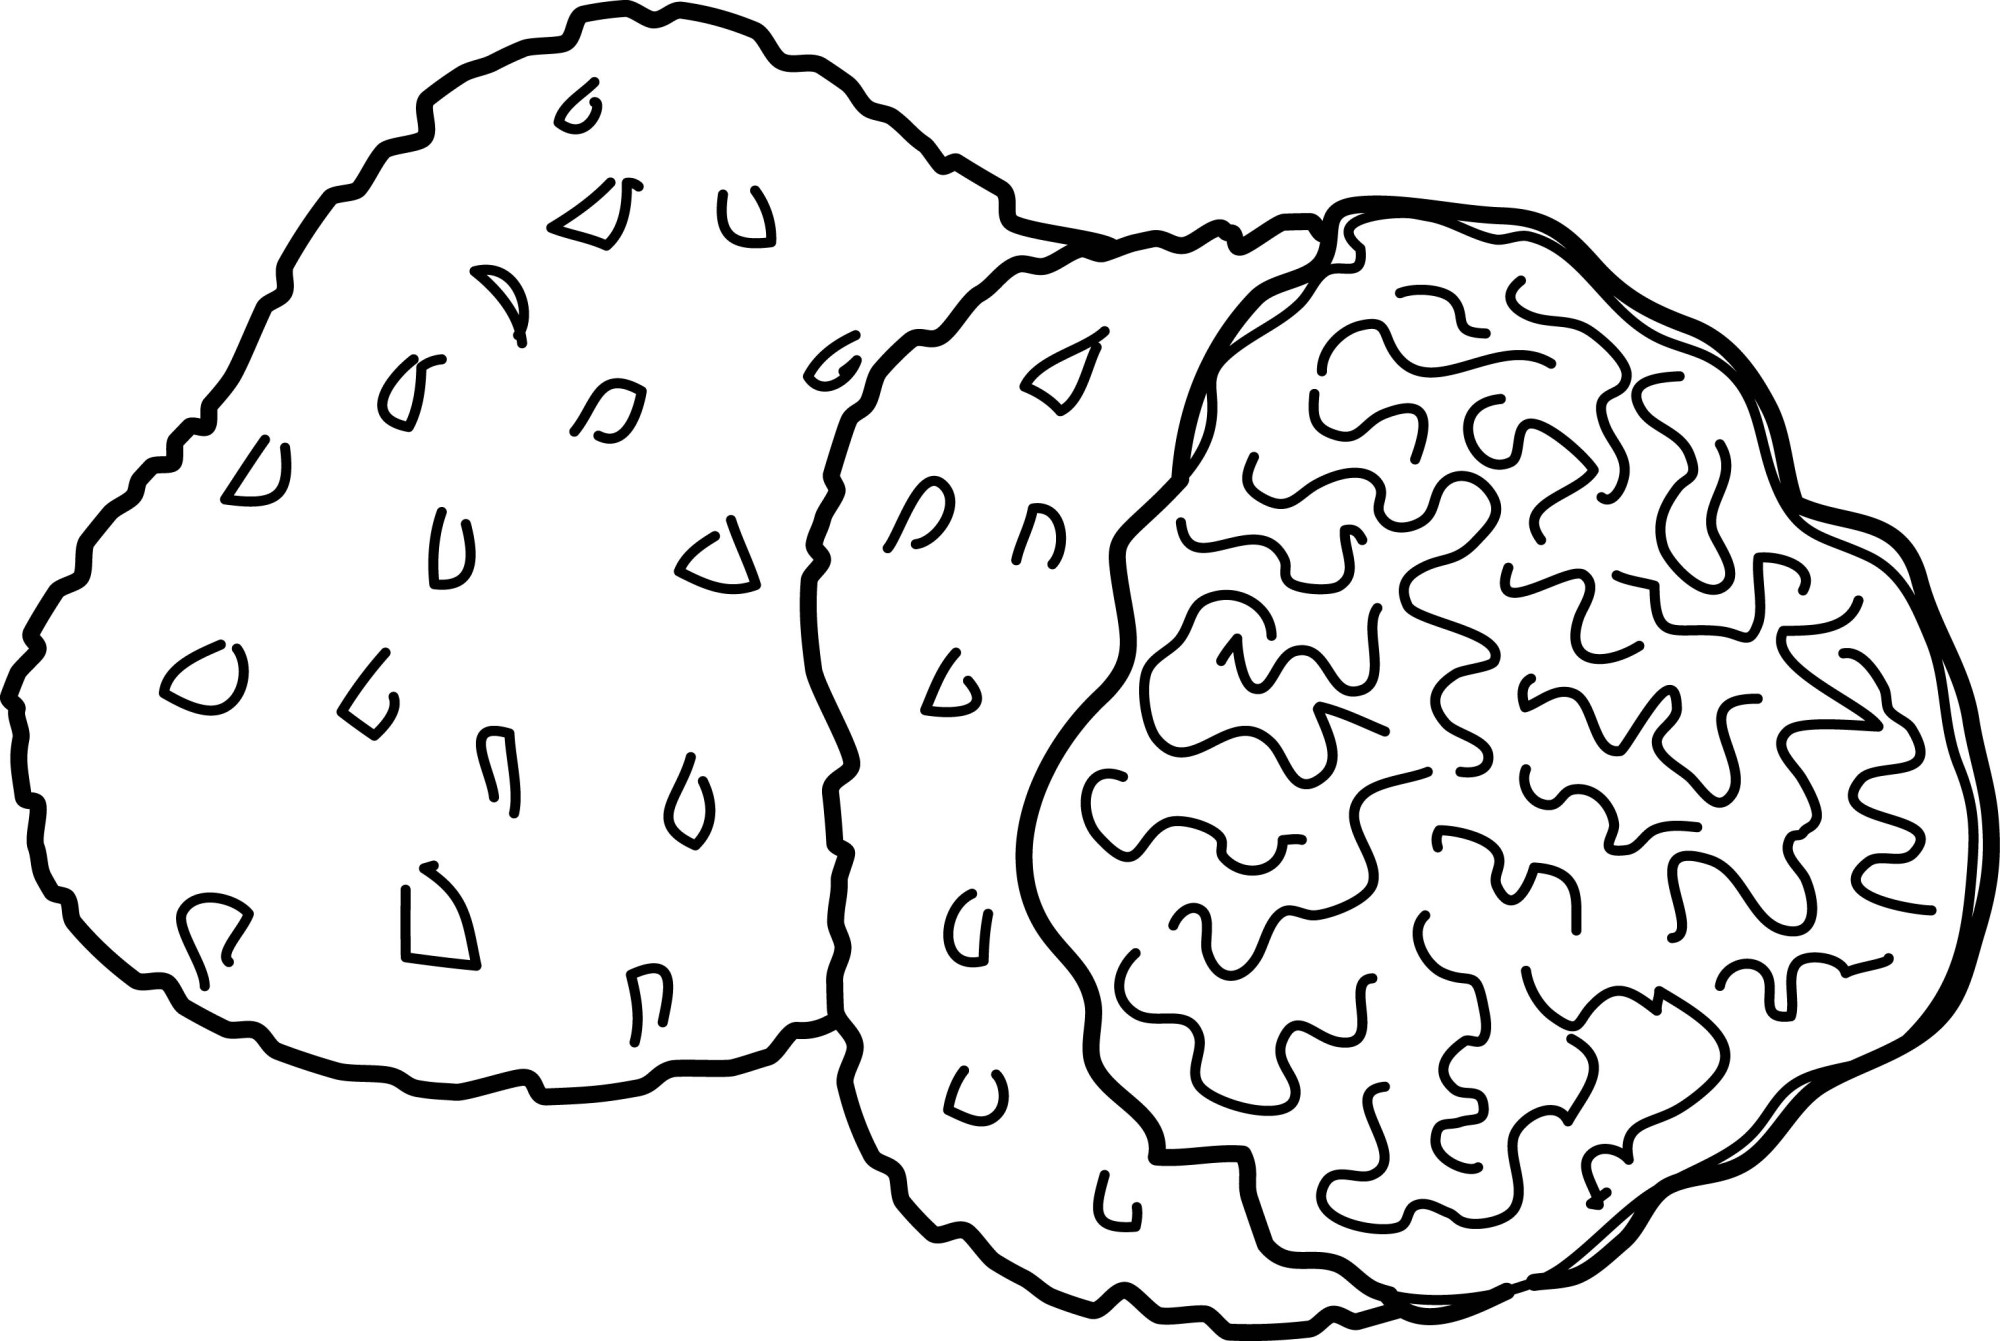 Раскраска для детей: гриб трюфель